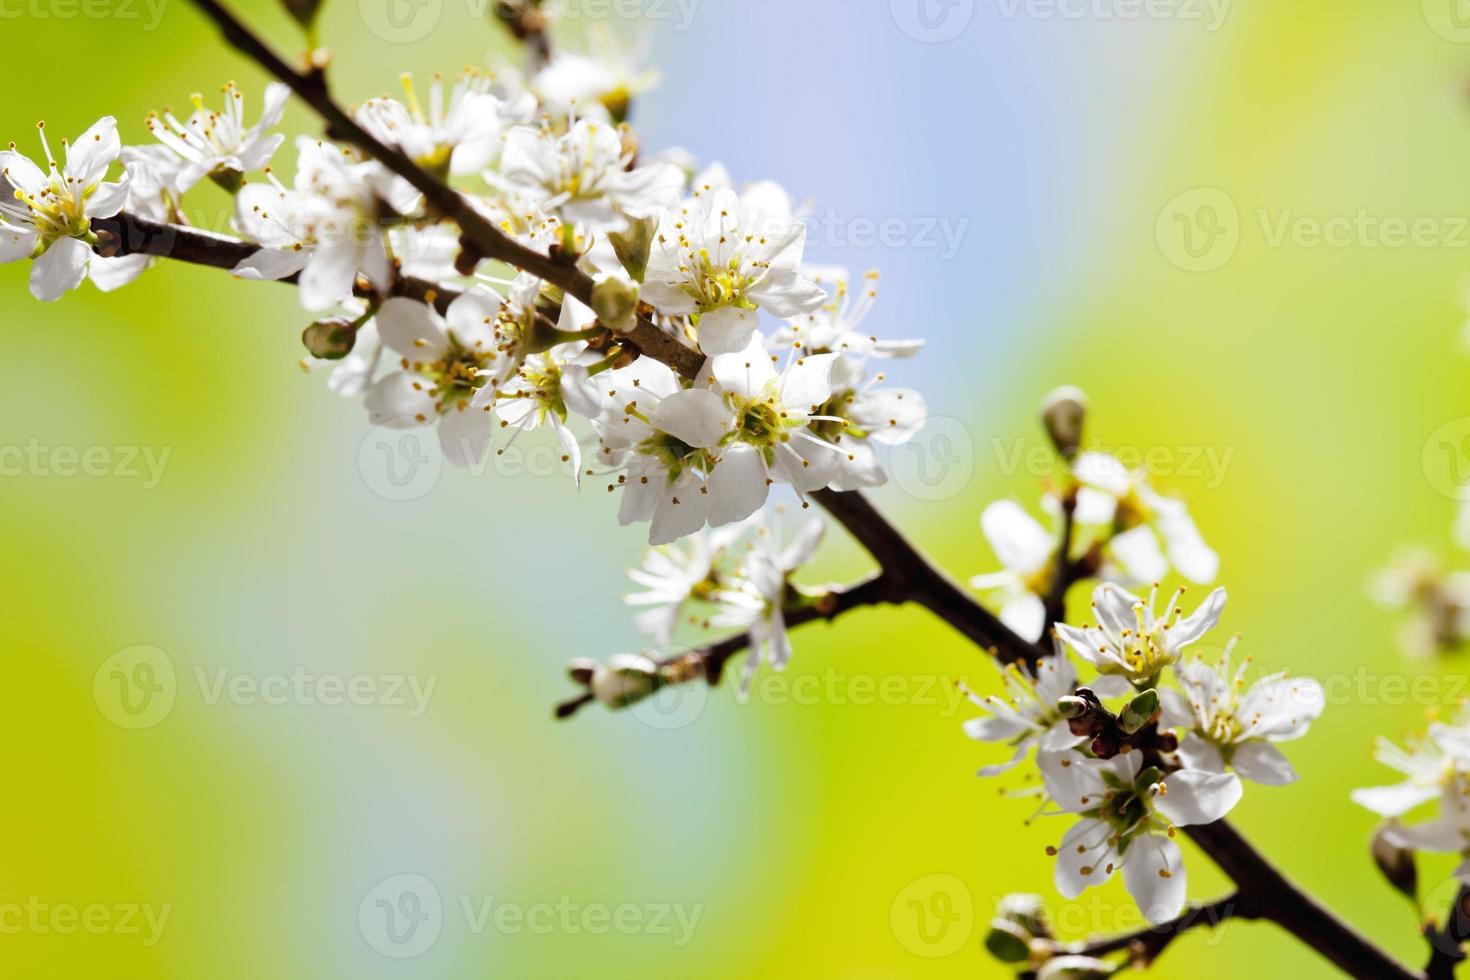 galho de espinheiro com flores brancas, crataegus laevigata foto